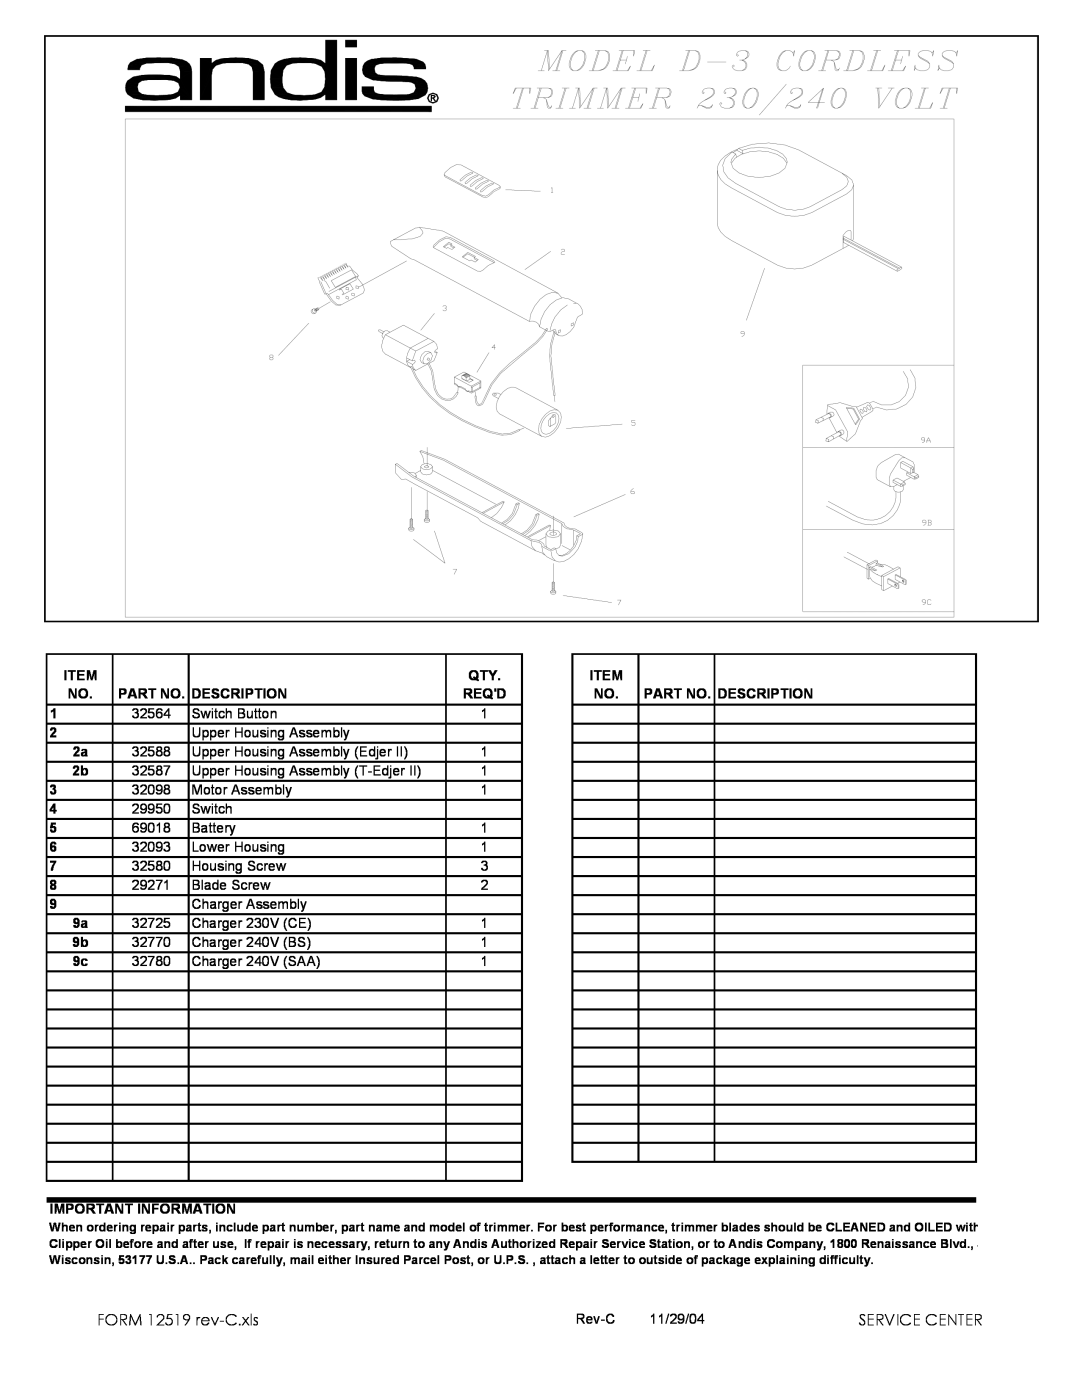 Andis Company D-3 manual FORM 12519 rev-C.xls, Service Center, Description, Reqd, Important Information 